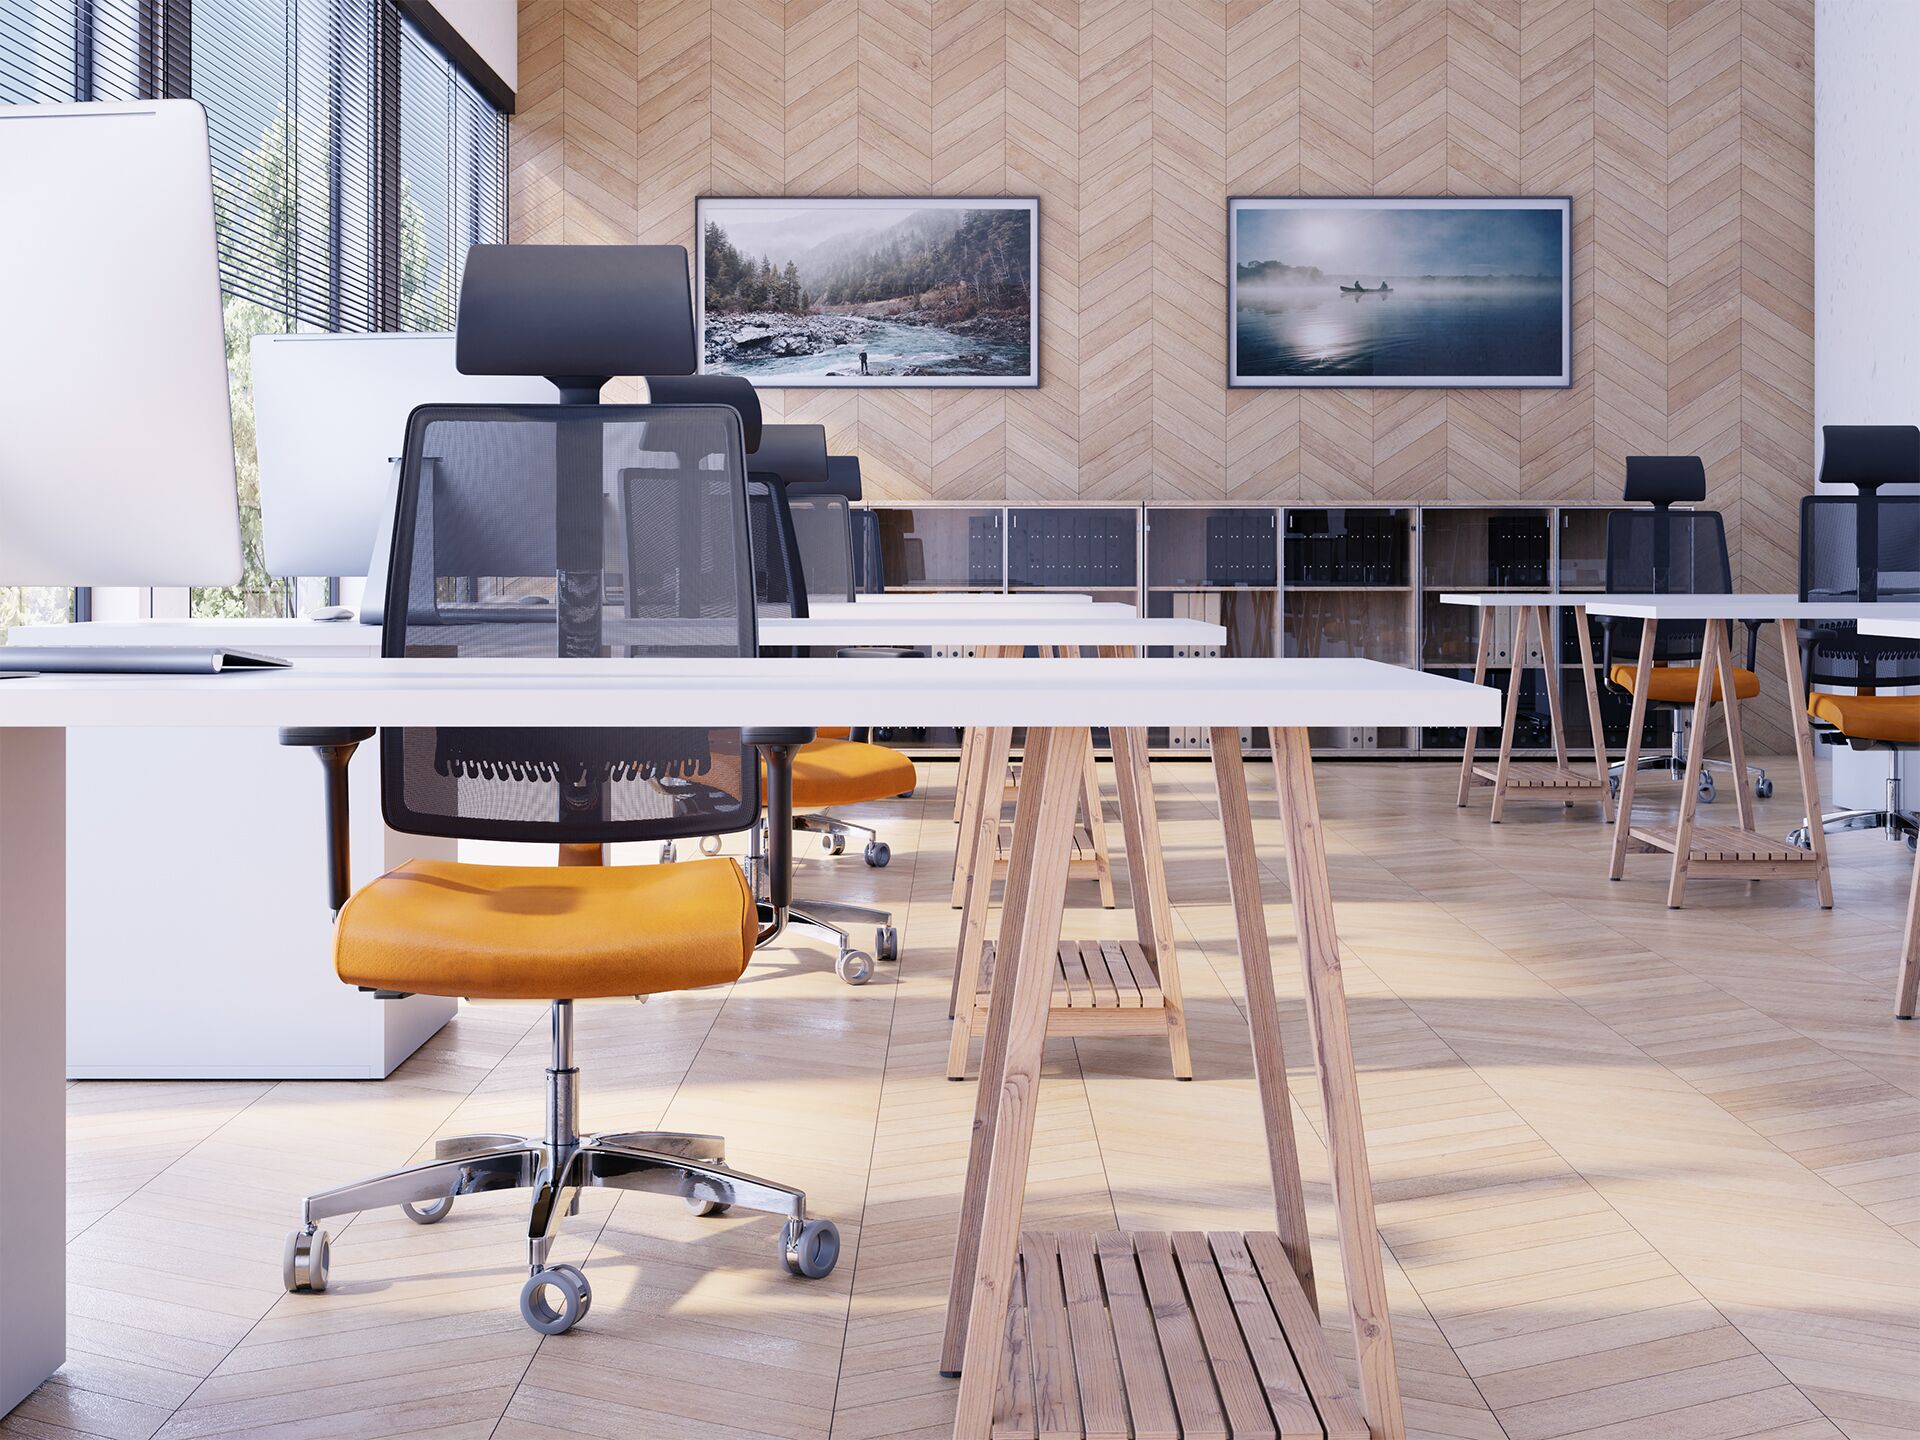 Pomieszczenie biurowe z fotelami biurowymi z pomarańczowymi siedzeniami stojącymi przy białych stołach od przodu